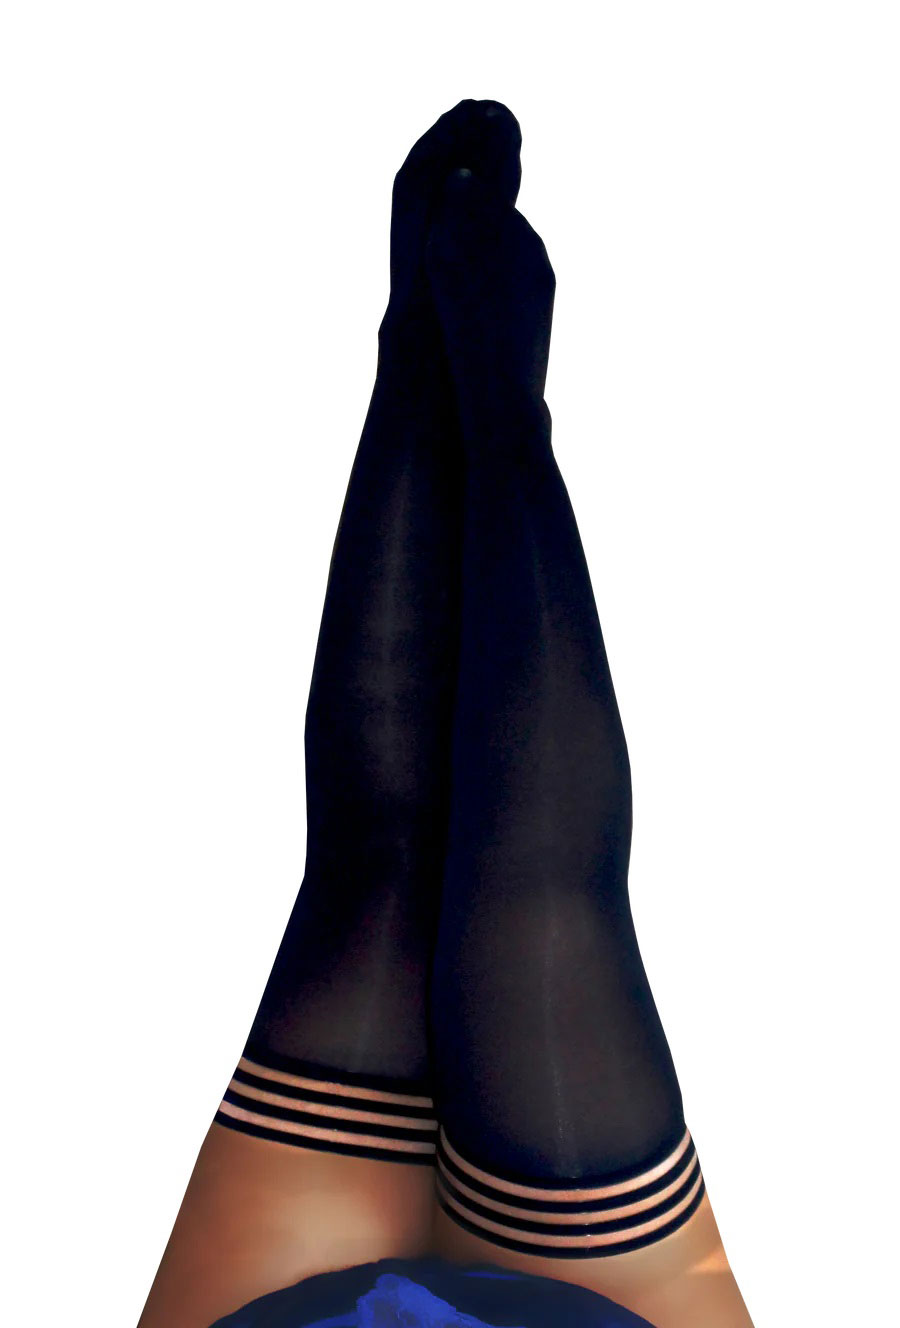 Danielle - Black Opaque Thigh High - Size D - Black